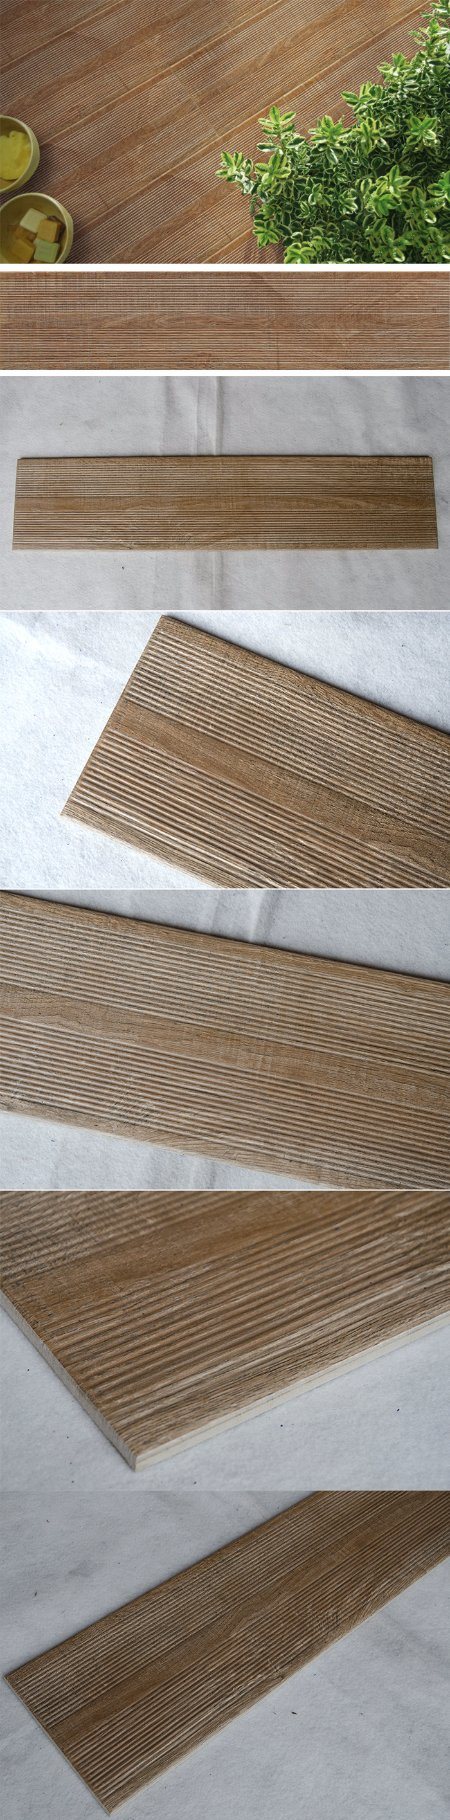 200X900mm Parquet Flooring Ceramic Wood Tile